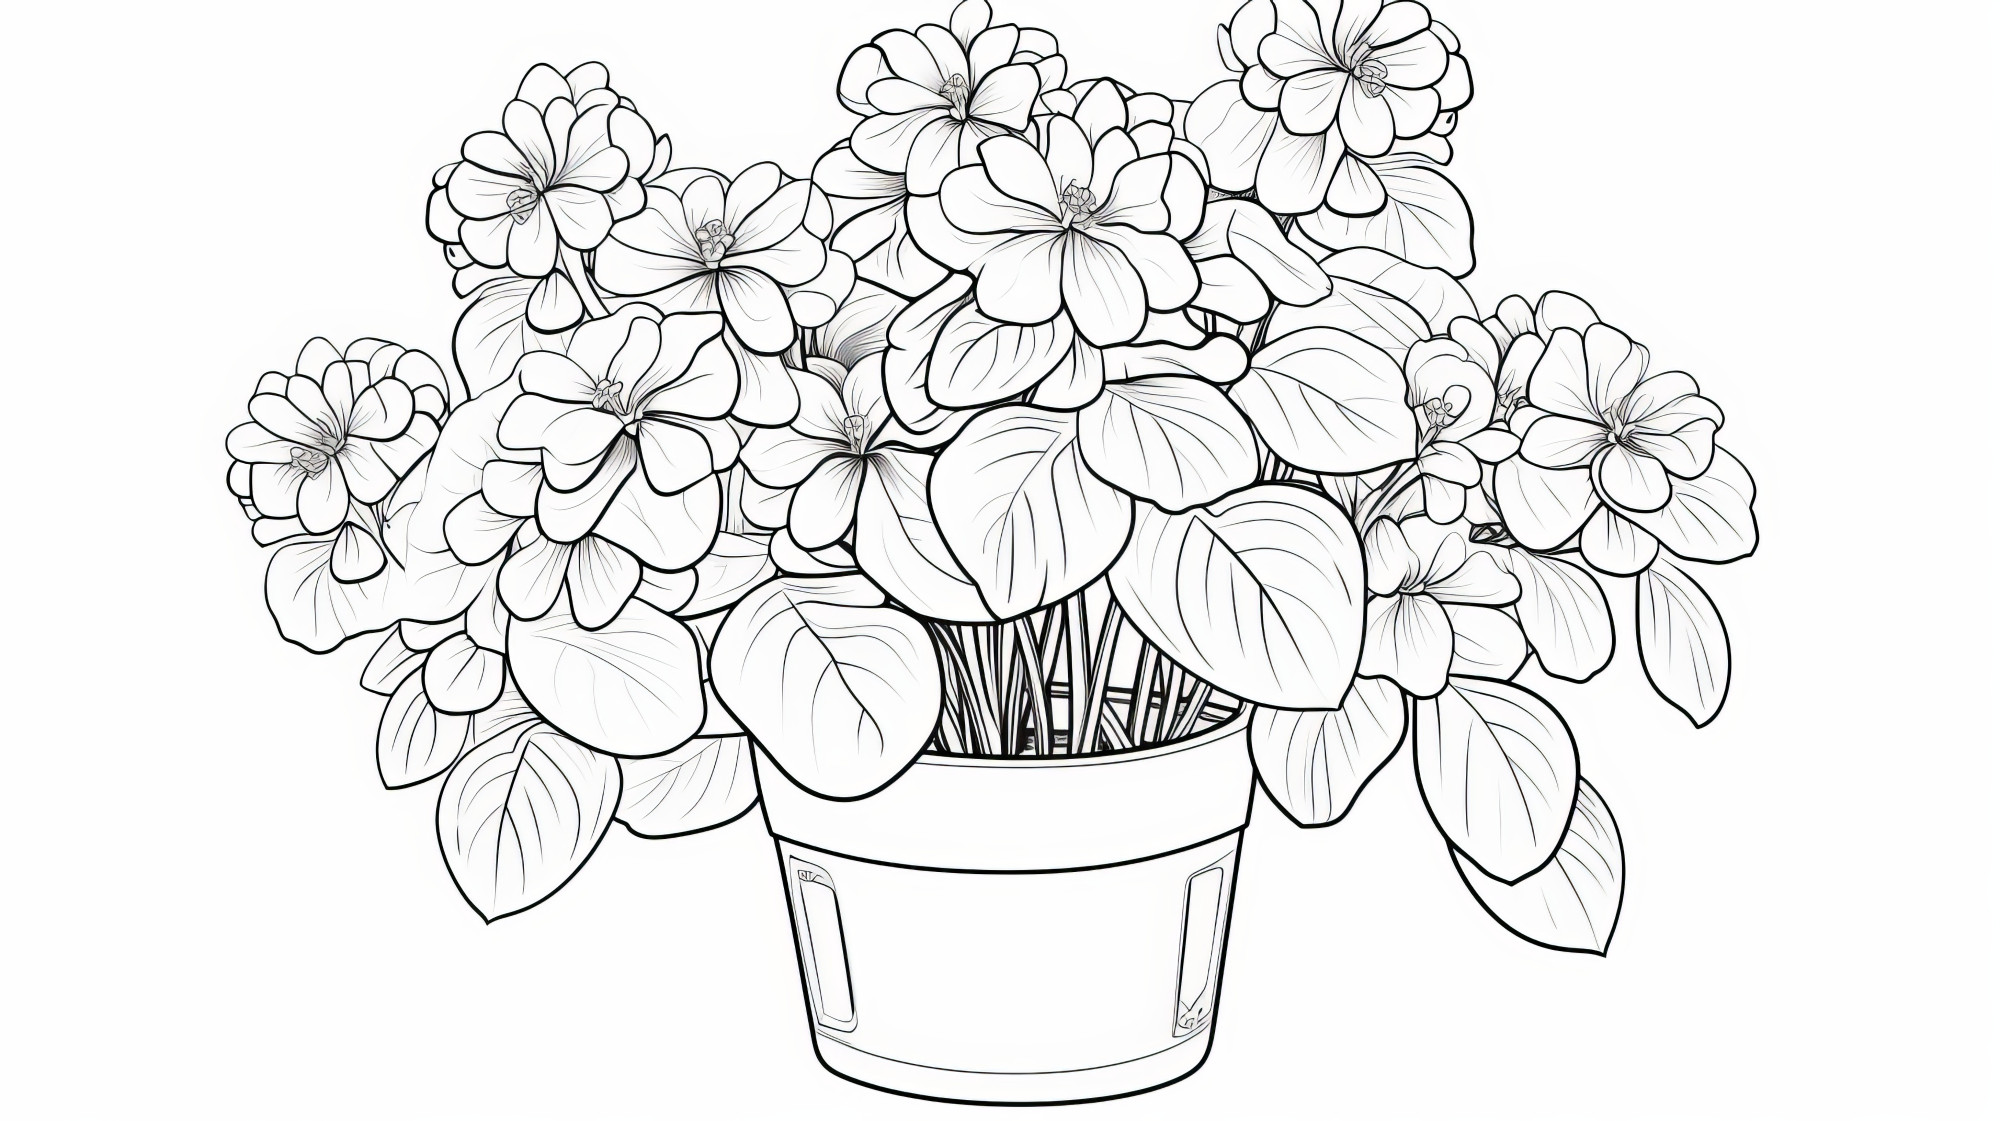 Раскраска для детей: комнатный цветок гортензии в цветочном горшке